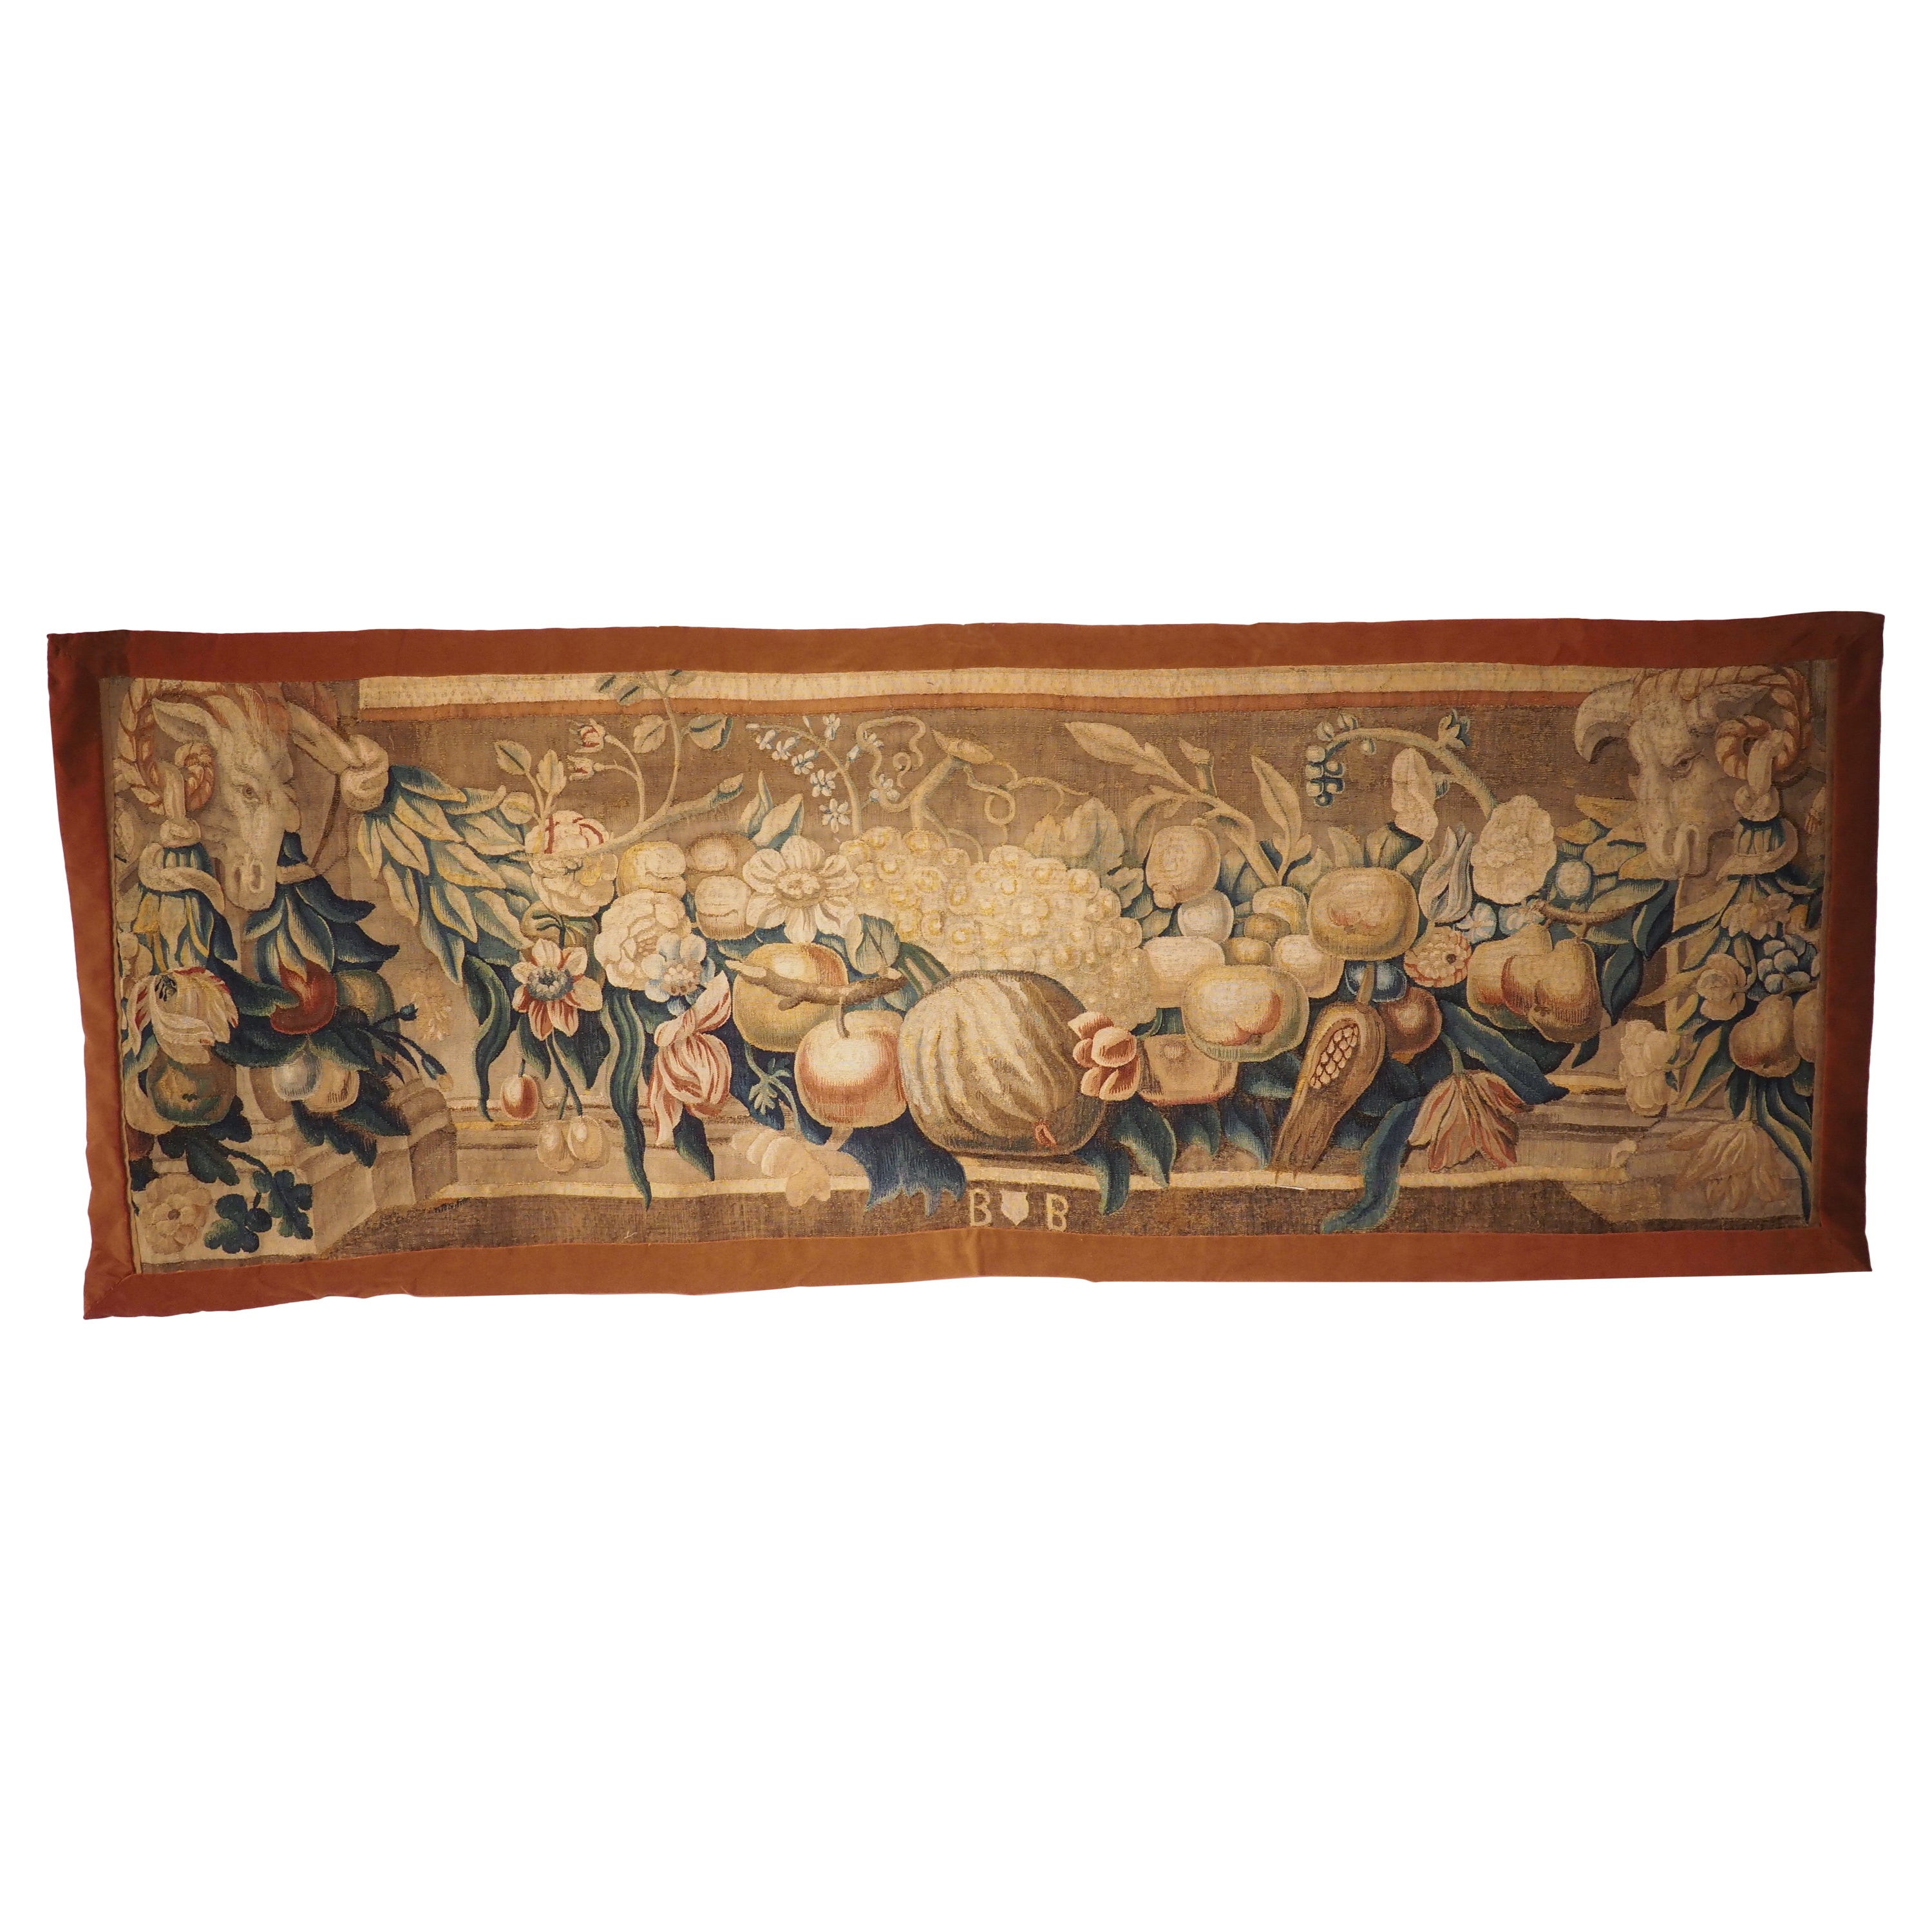 Brabant Brüsseler Wandteppichfragment des frühen 18. Jahrhunderts mit Schwalben- und Widderköpfen